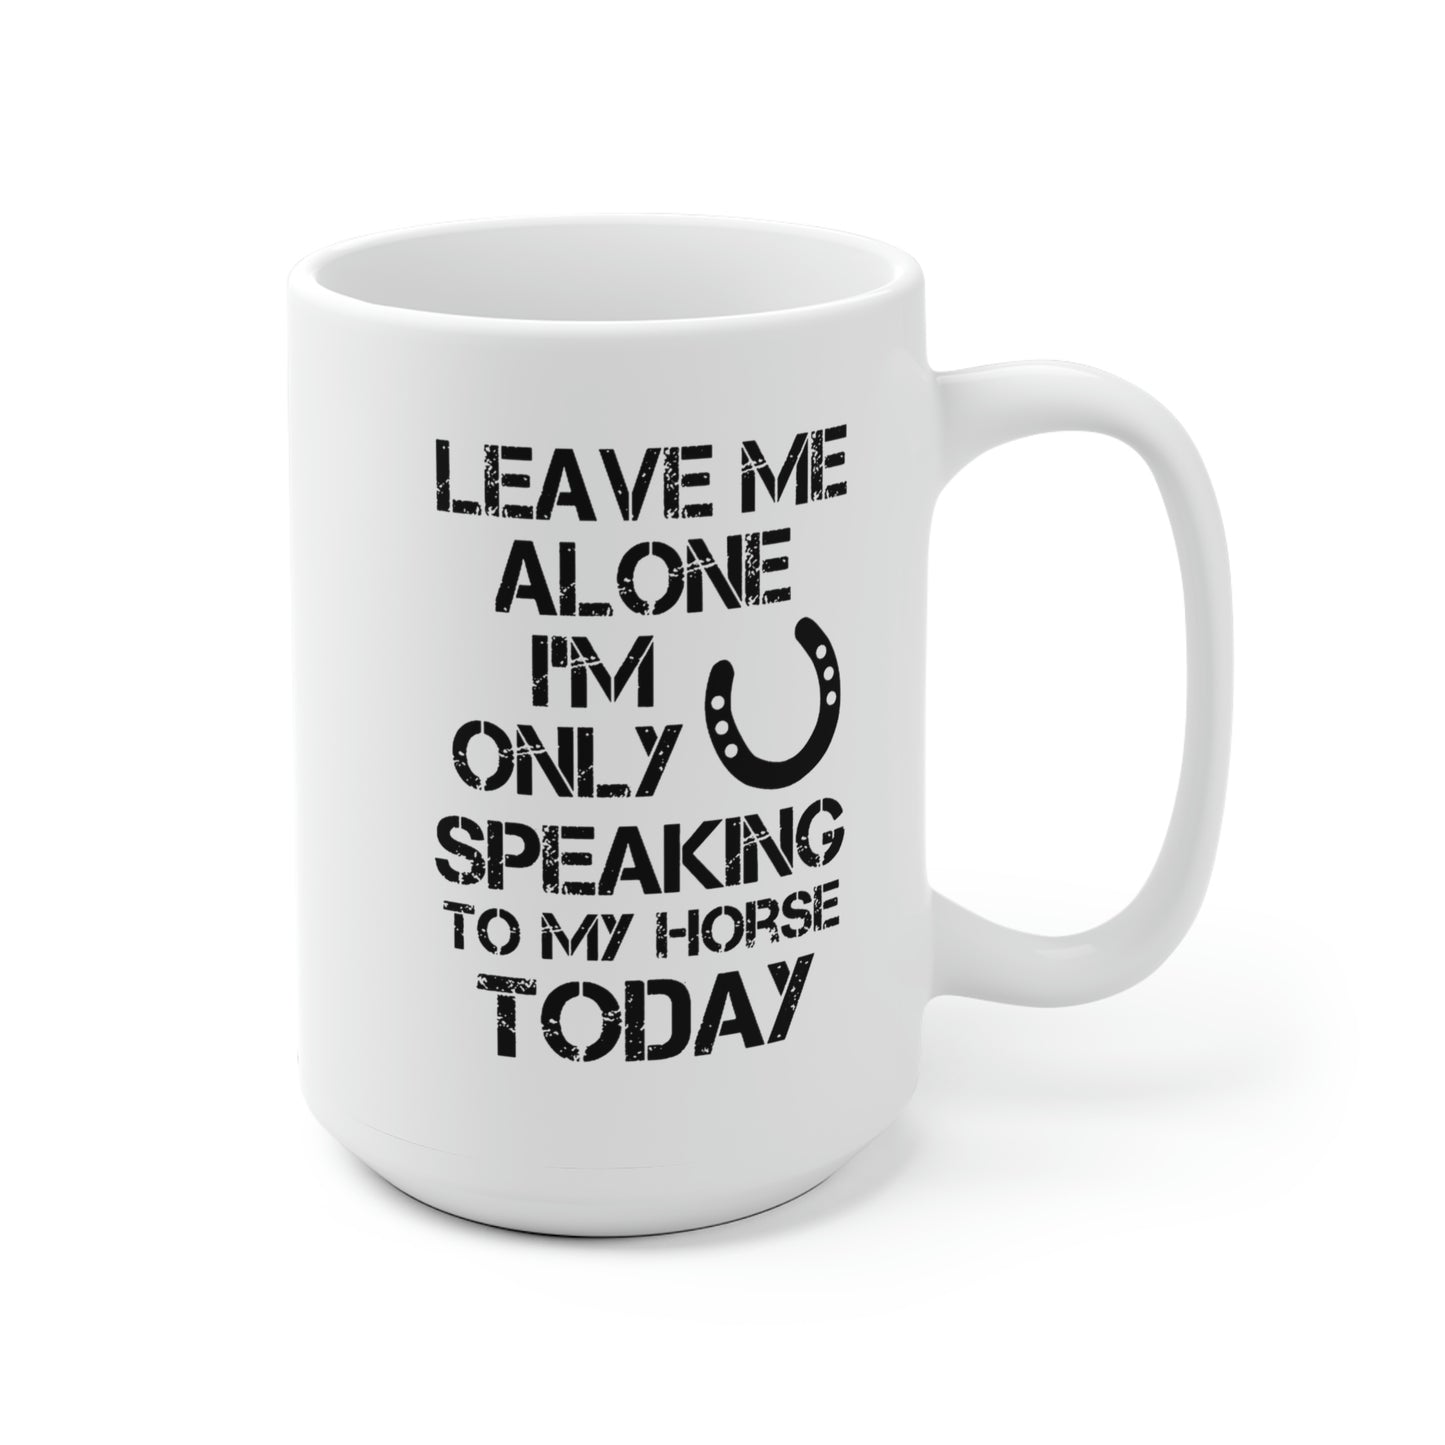 Leave Me Alone - White Ceramic Mug